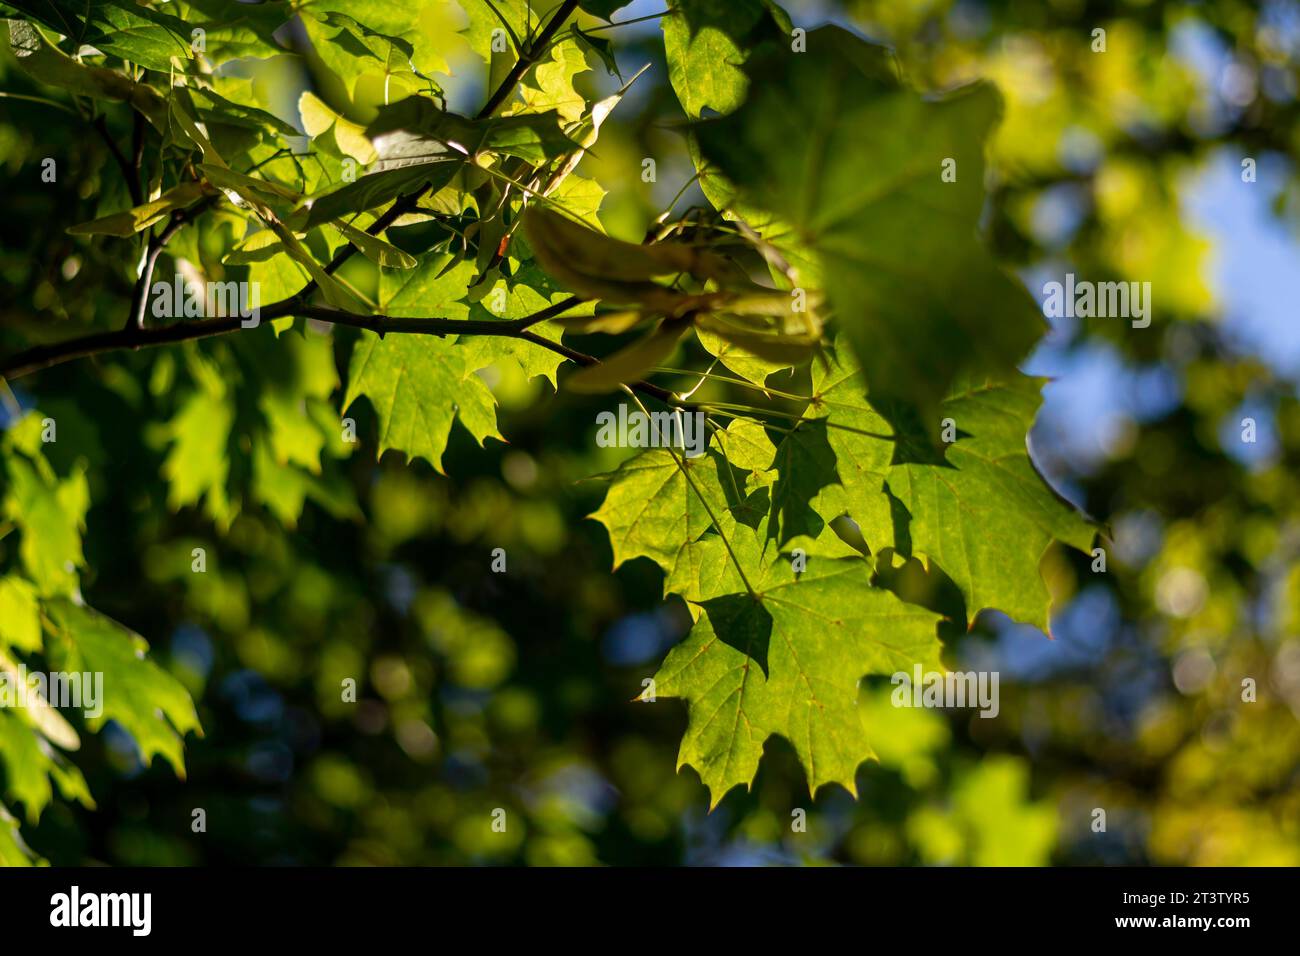 Image haute résolution isolée des feuilles vertes dans la lumière directe du soleil créant des ombres et des textures naturelles différentes Banque D'Images